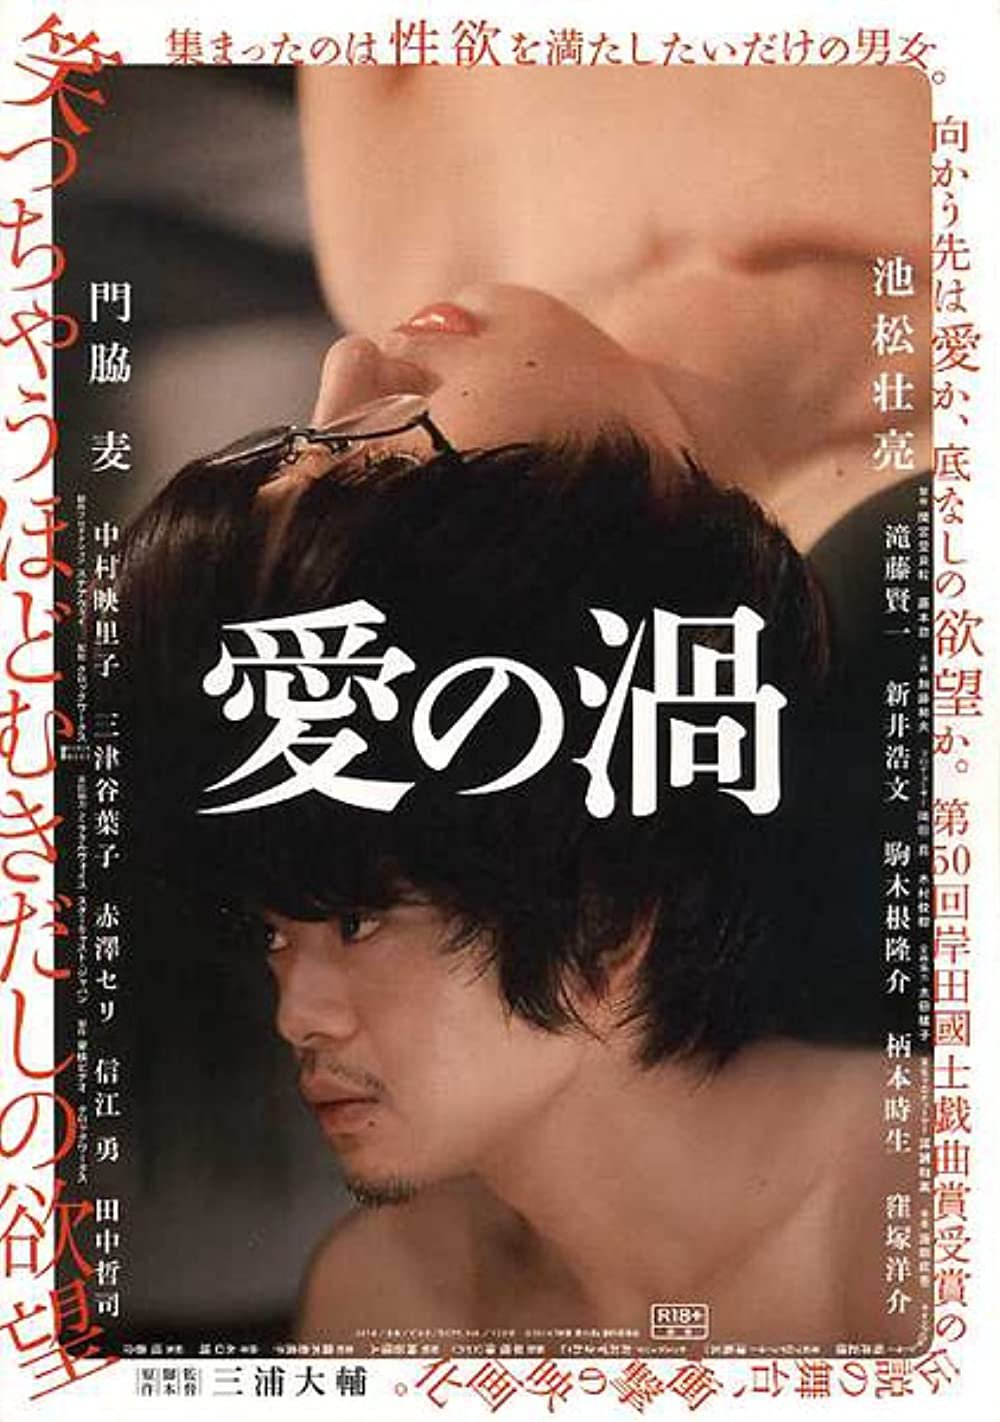 Japanese movies 18